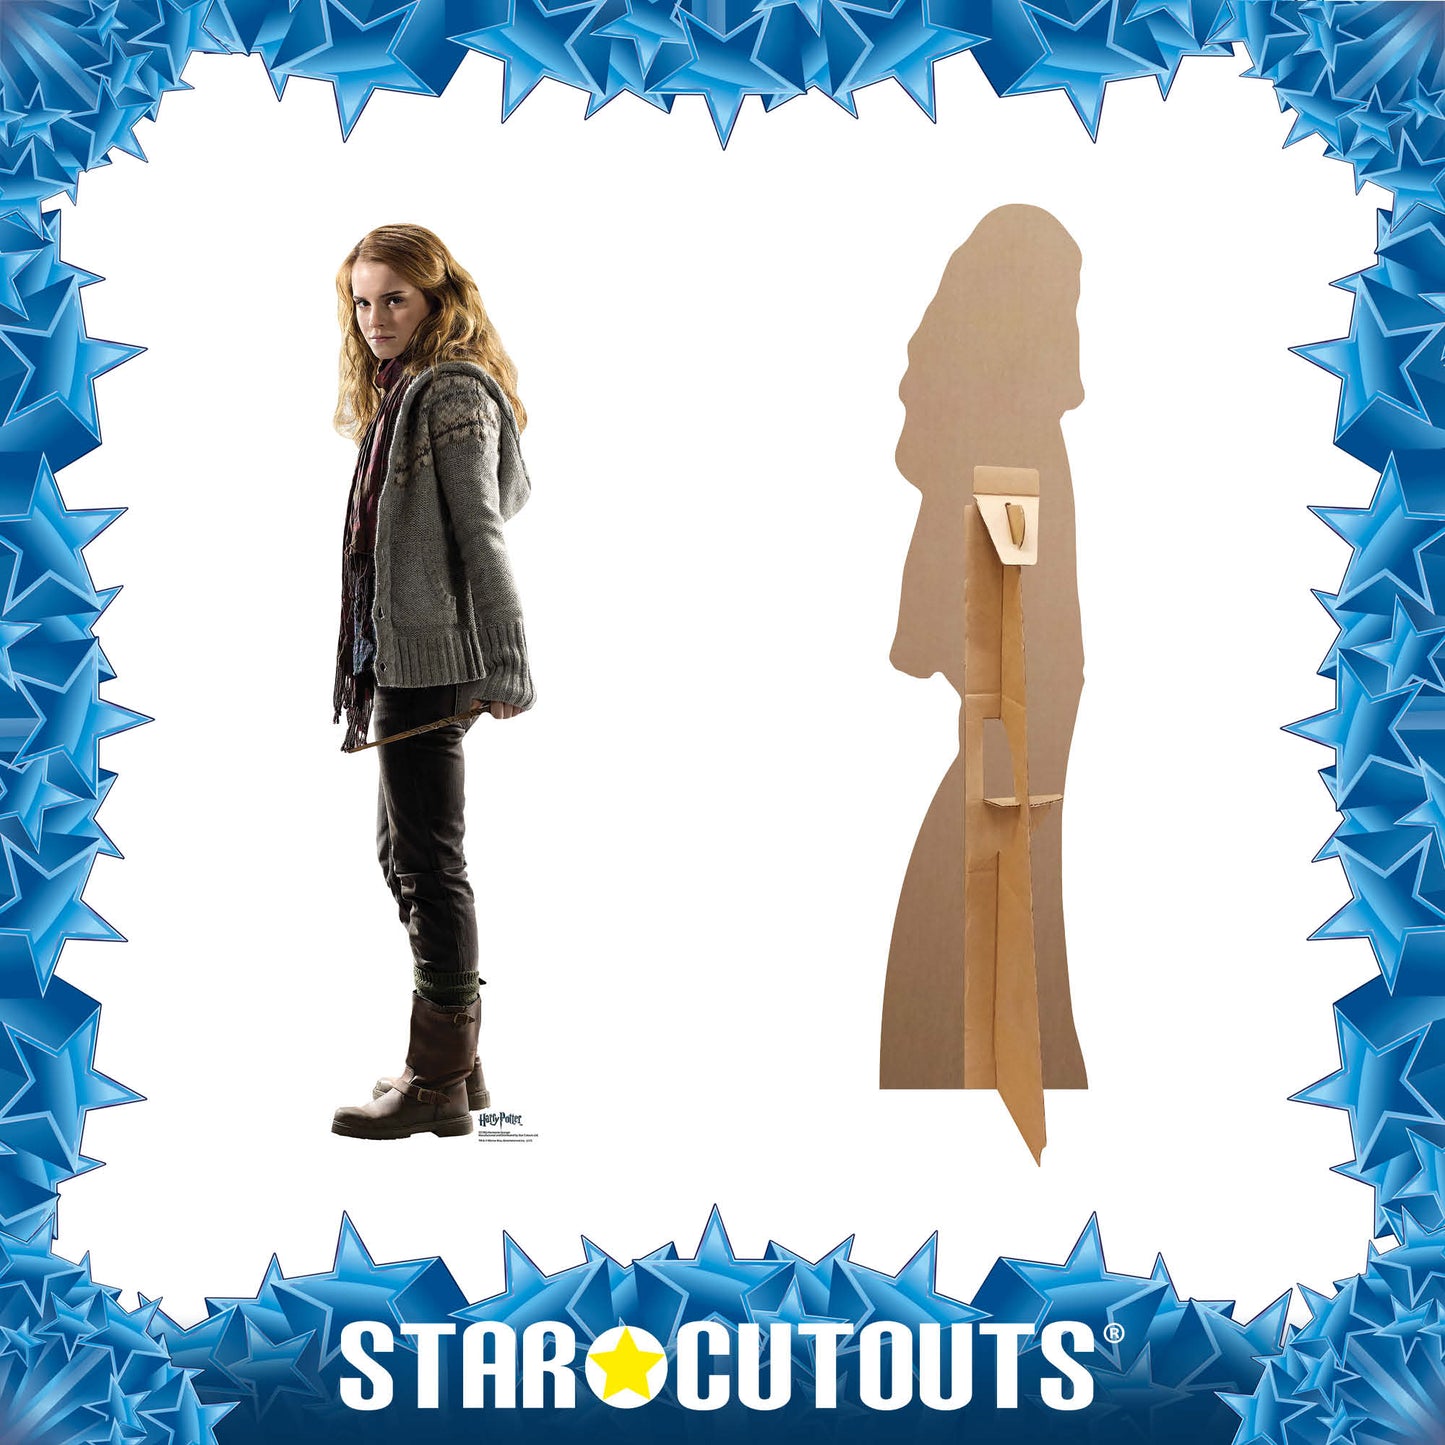 SC1962 Hermione Granger Star Mini Cardboard Cut Out Height 92cm